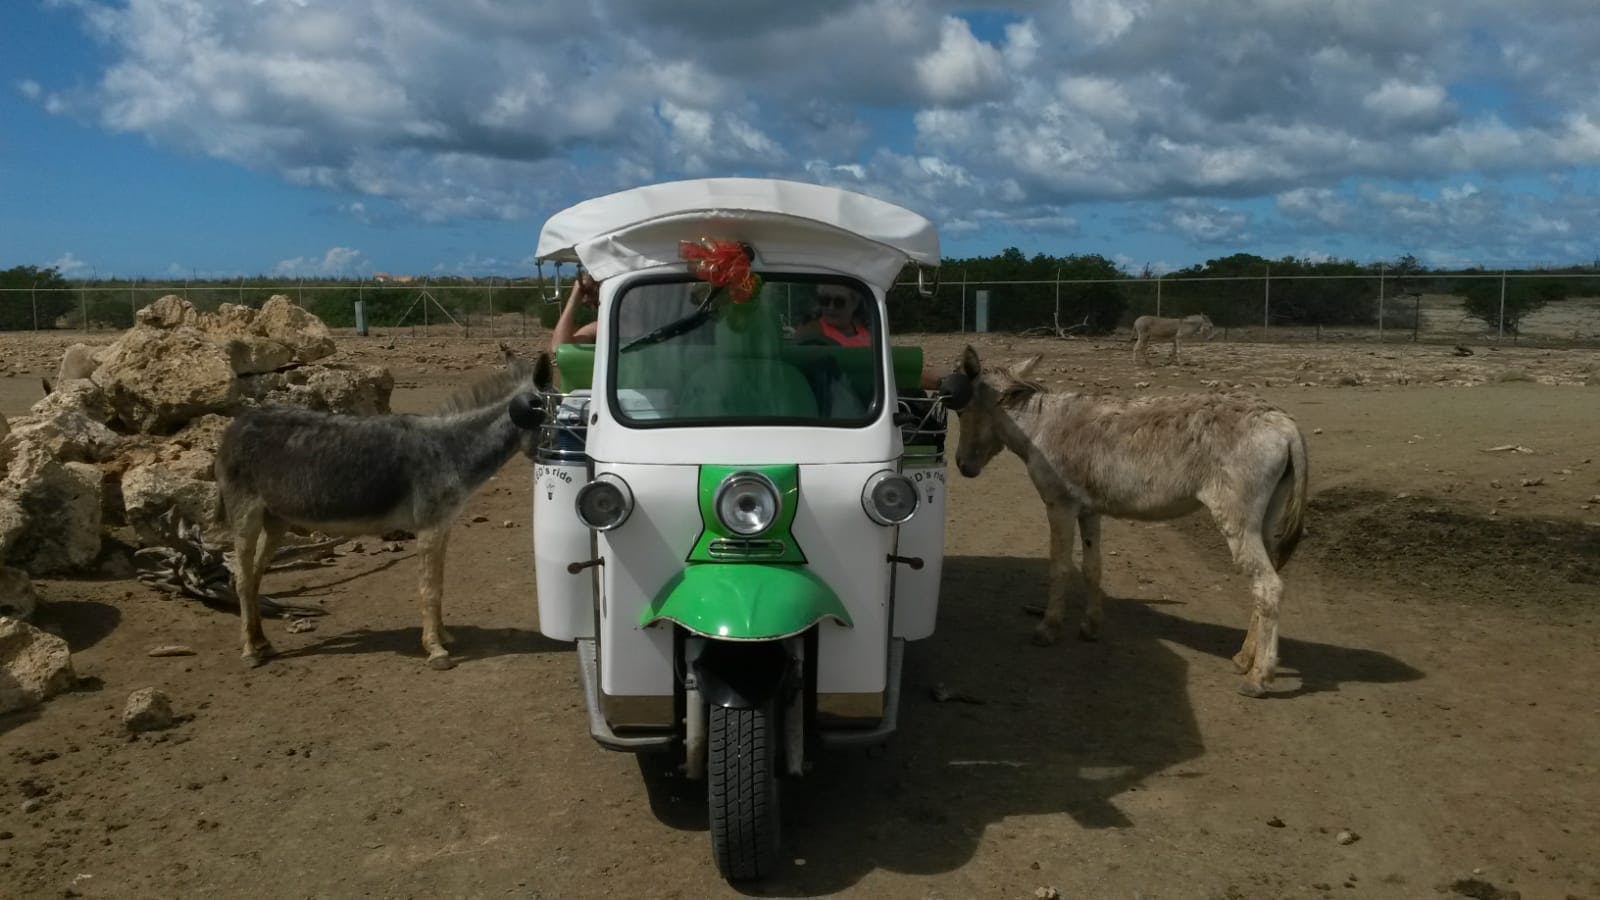 Visita al santuario de burros en tuk-tuk